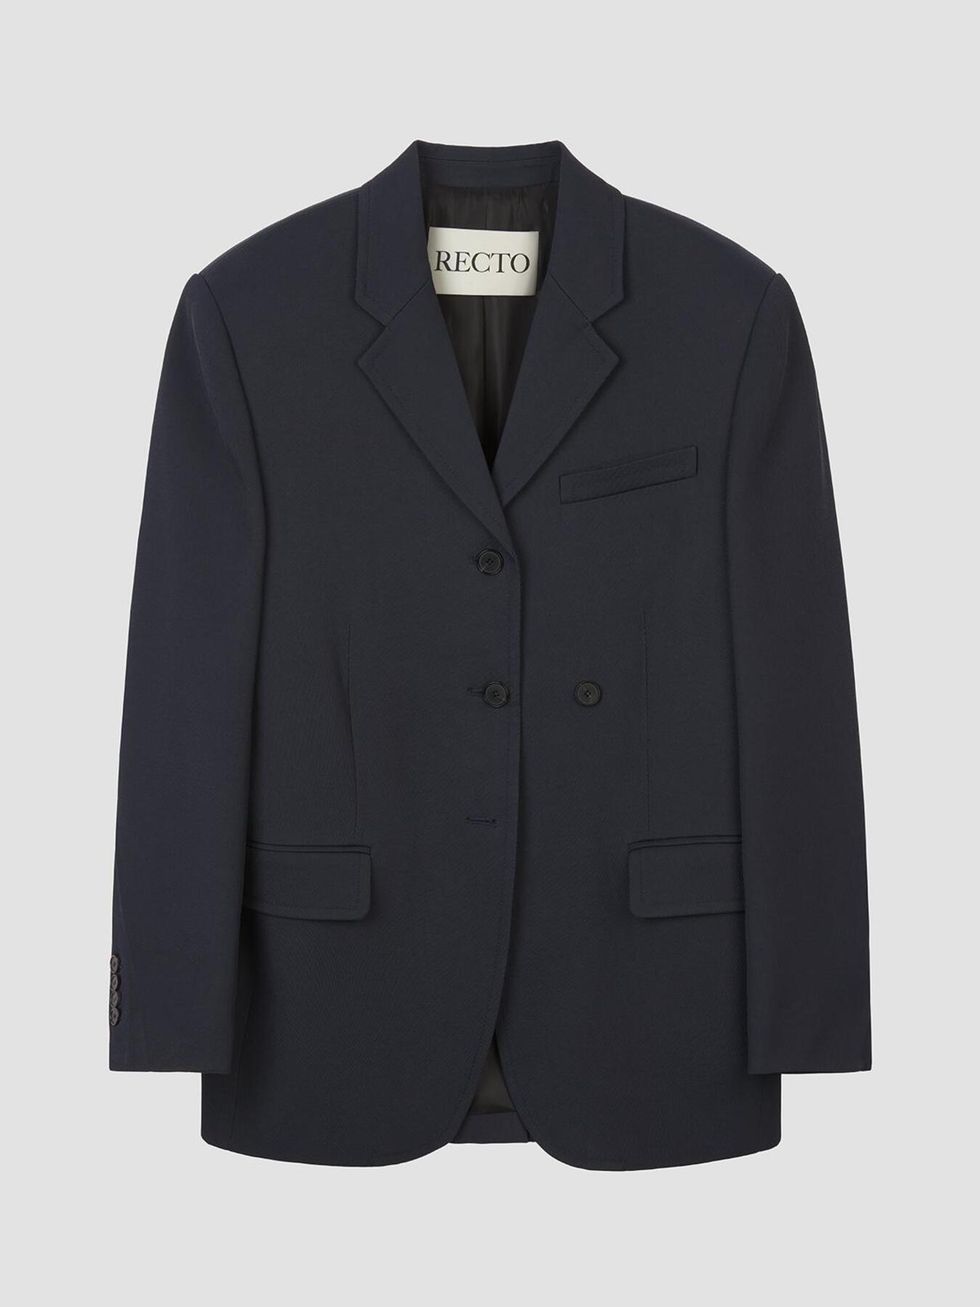 a grey suit jacket